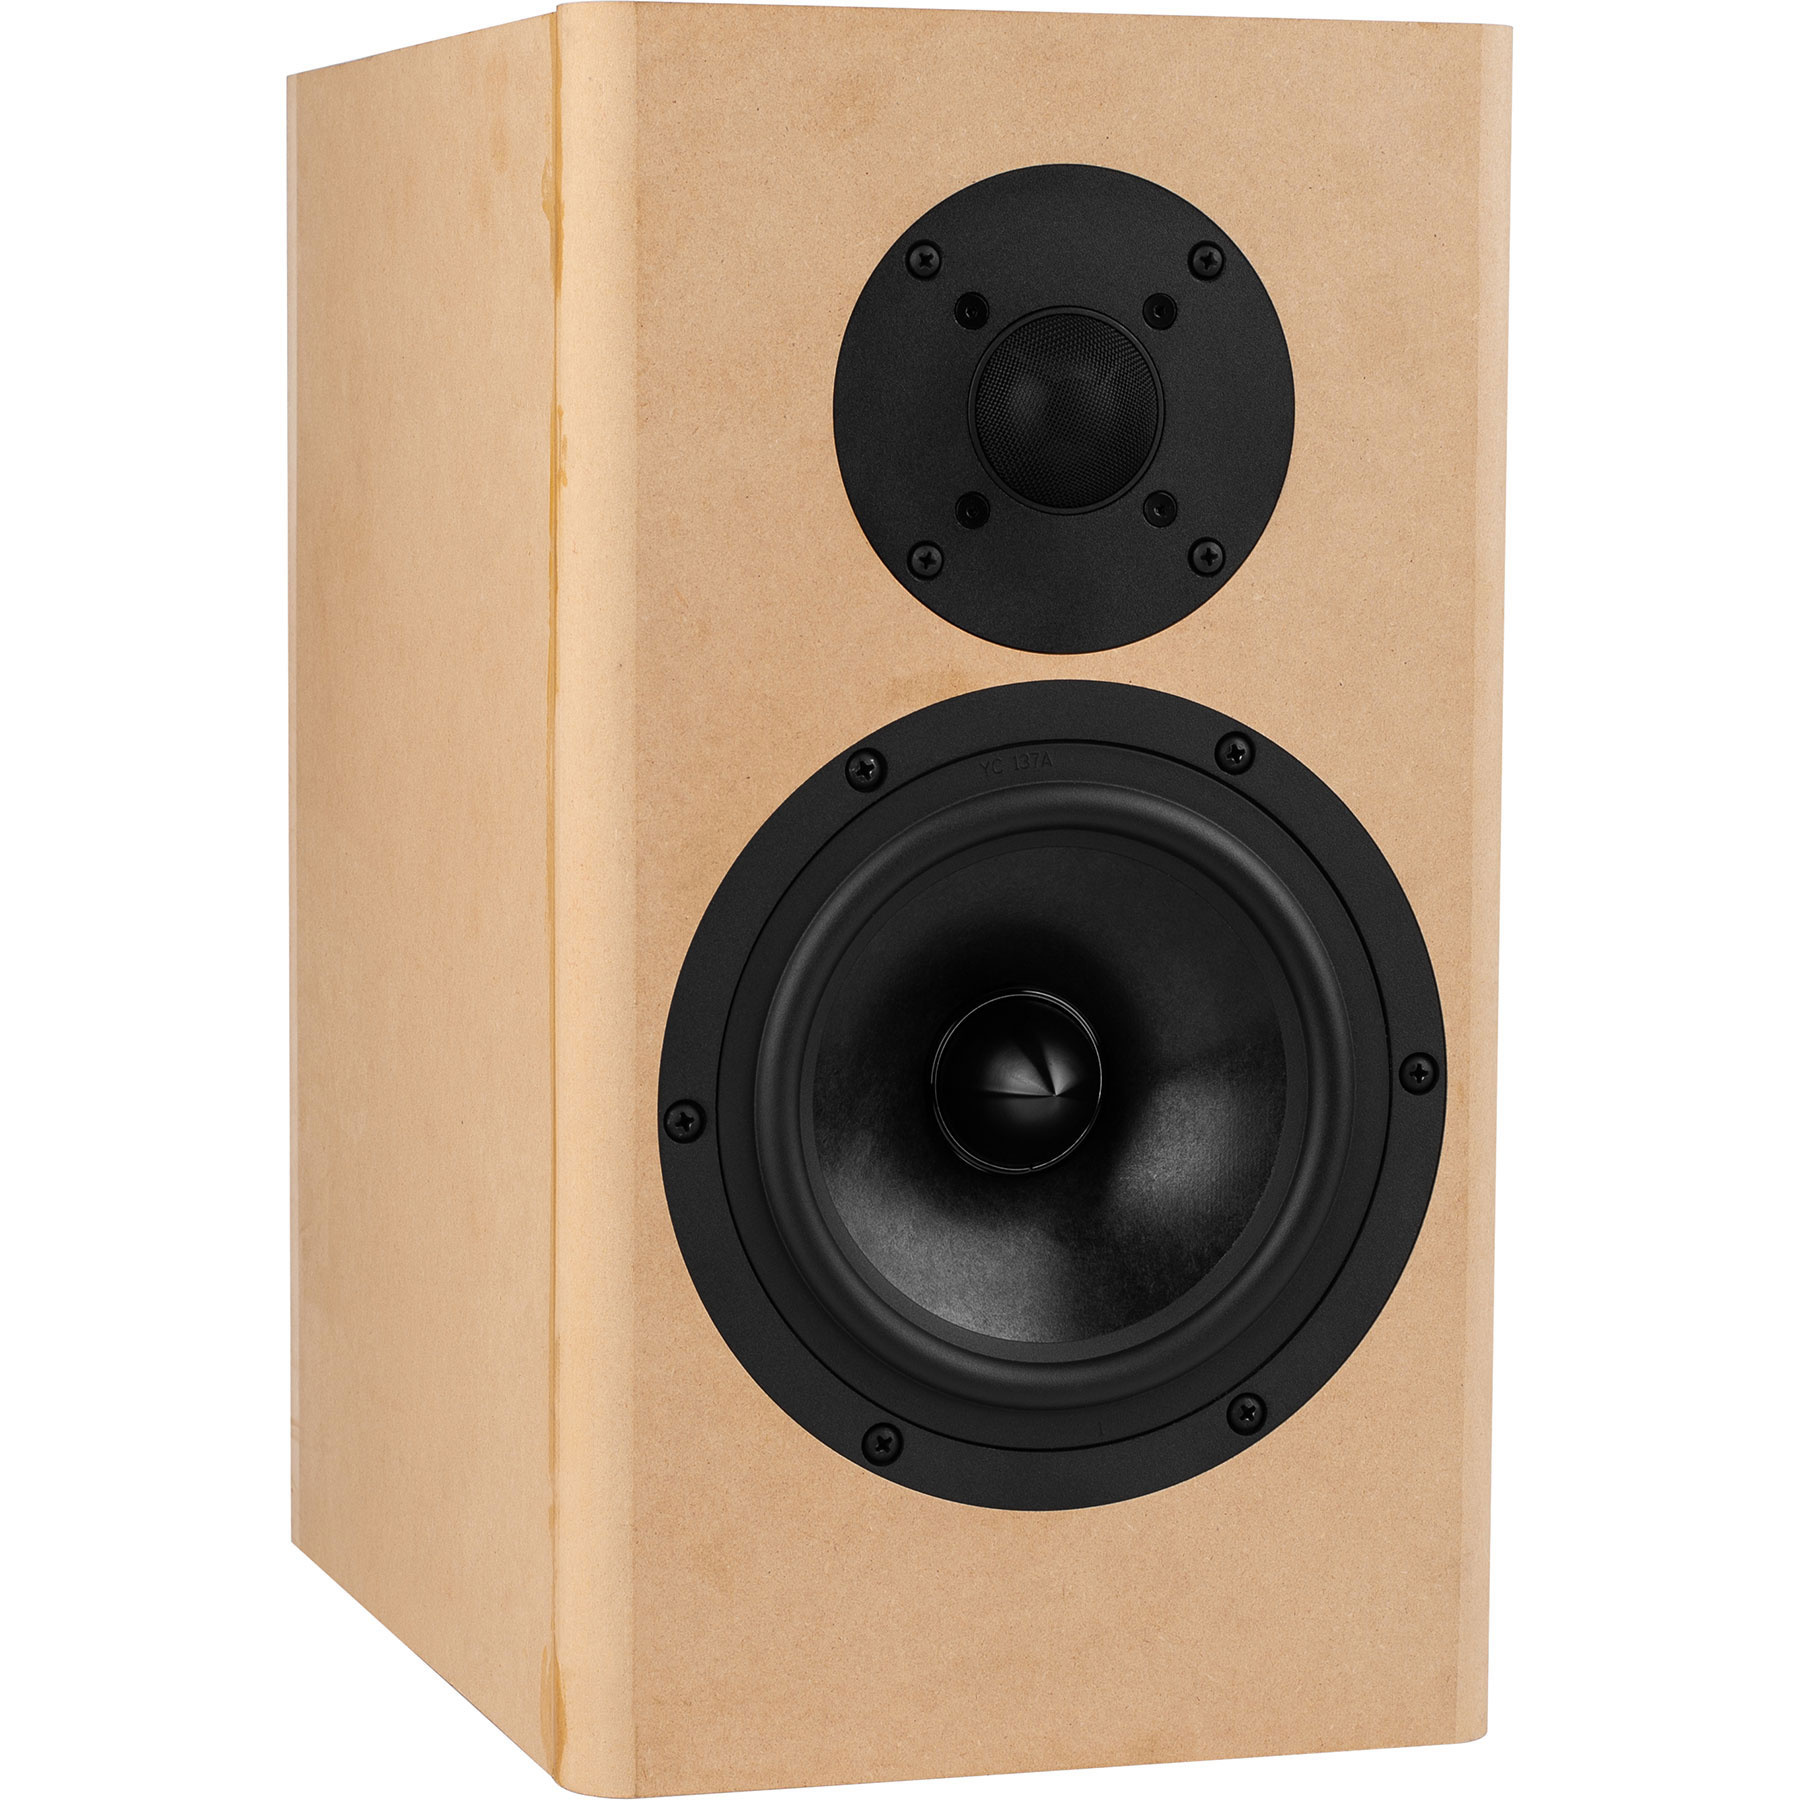 Order The Samba Mt Diy Speaker Kit